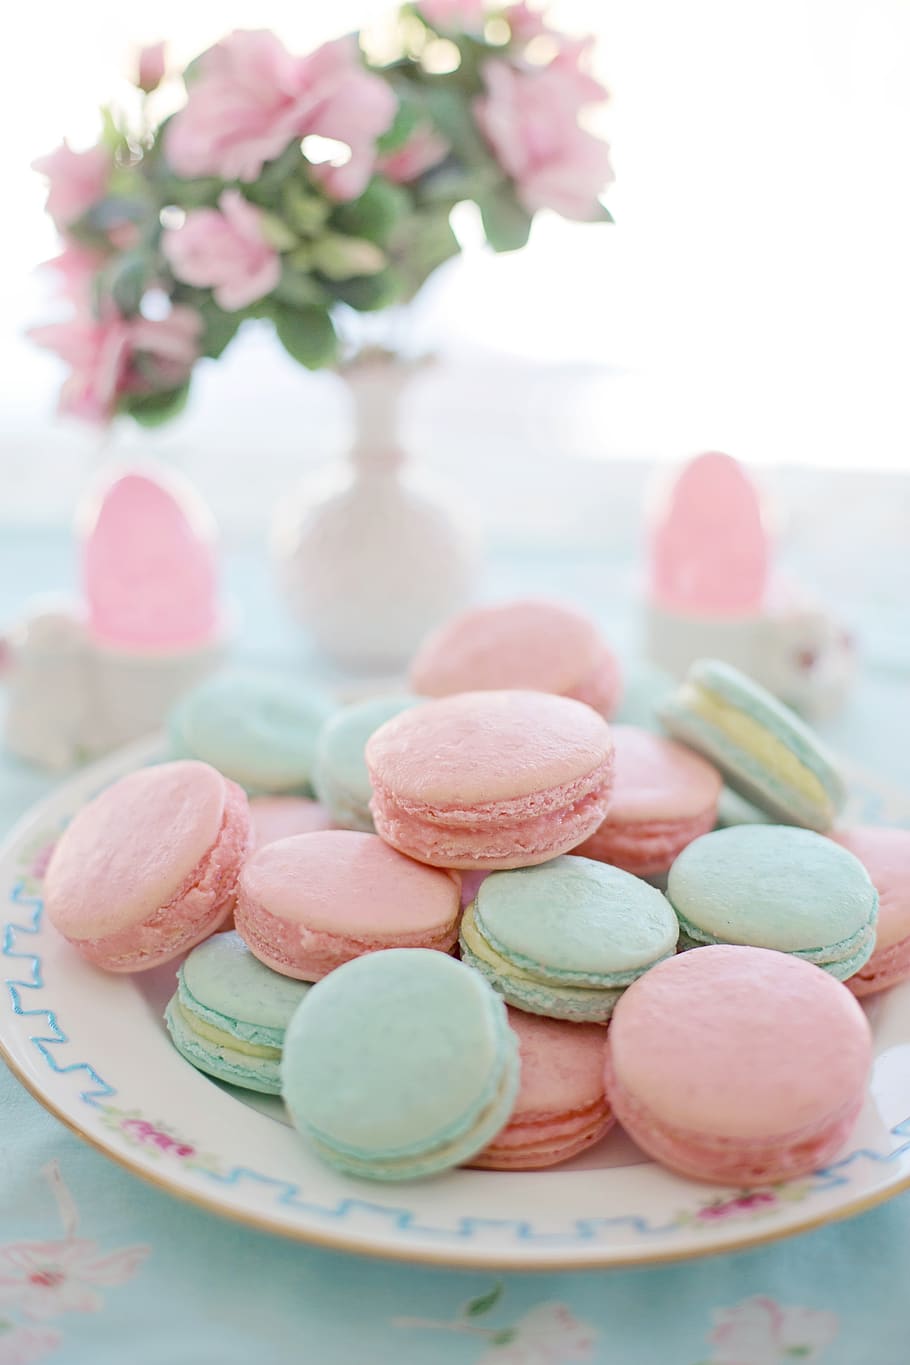 HD wallpaper: macarons, pink, aqua, pastels, cookies, biscuits, sweet, dessert